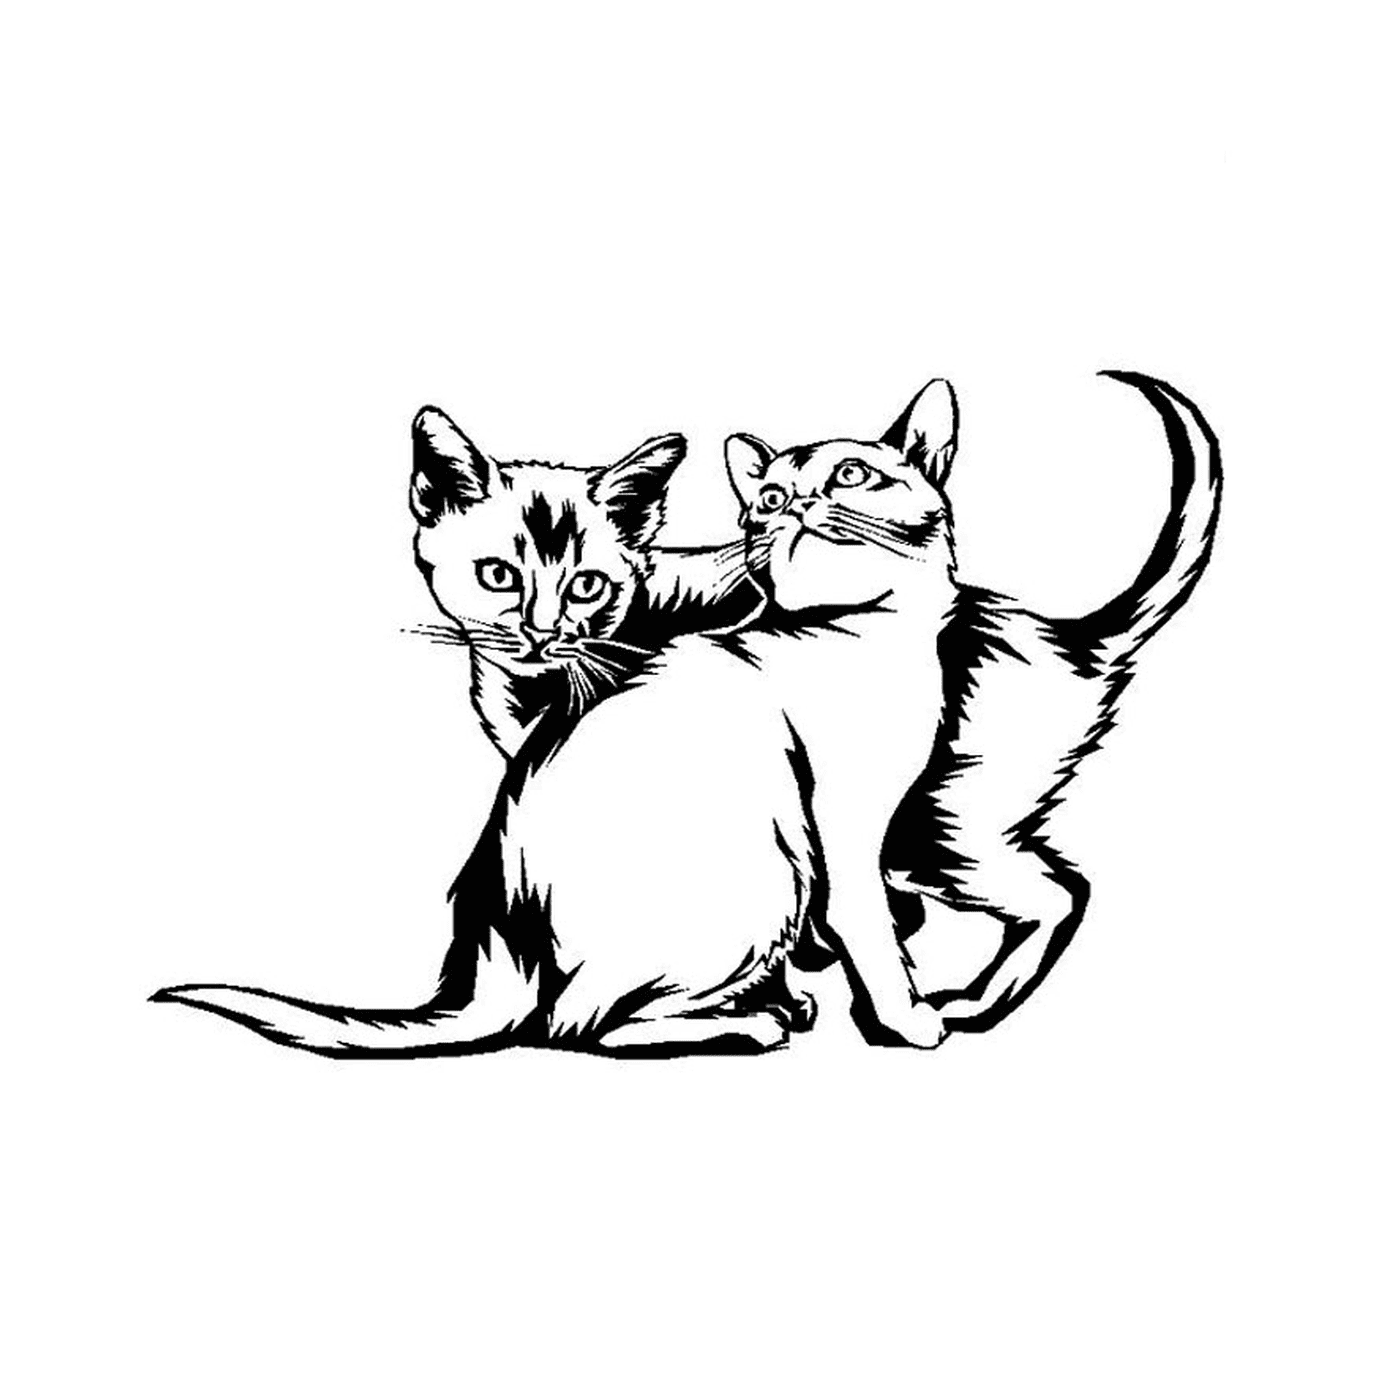  Zwei Kätzchen spielen zusammen 